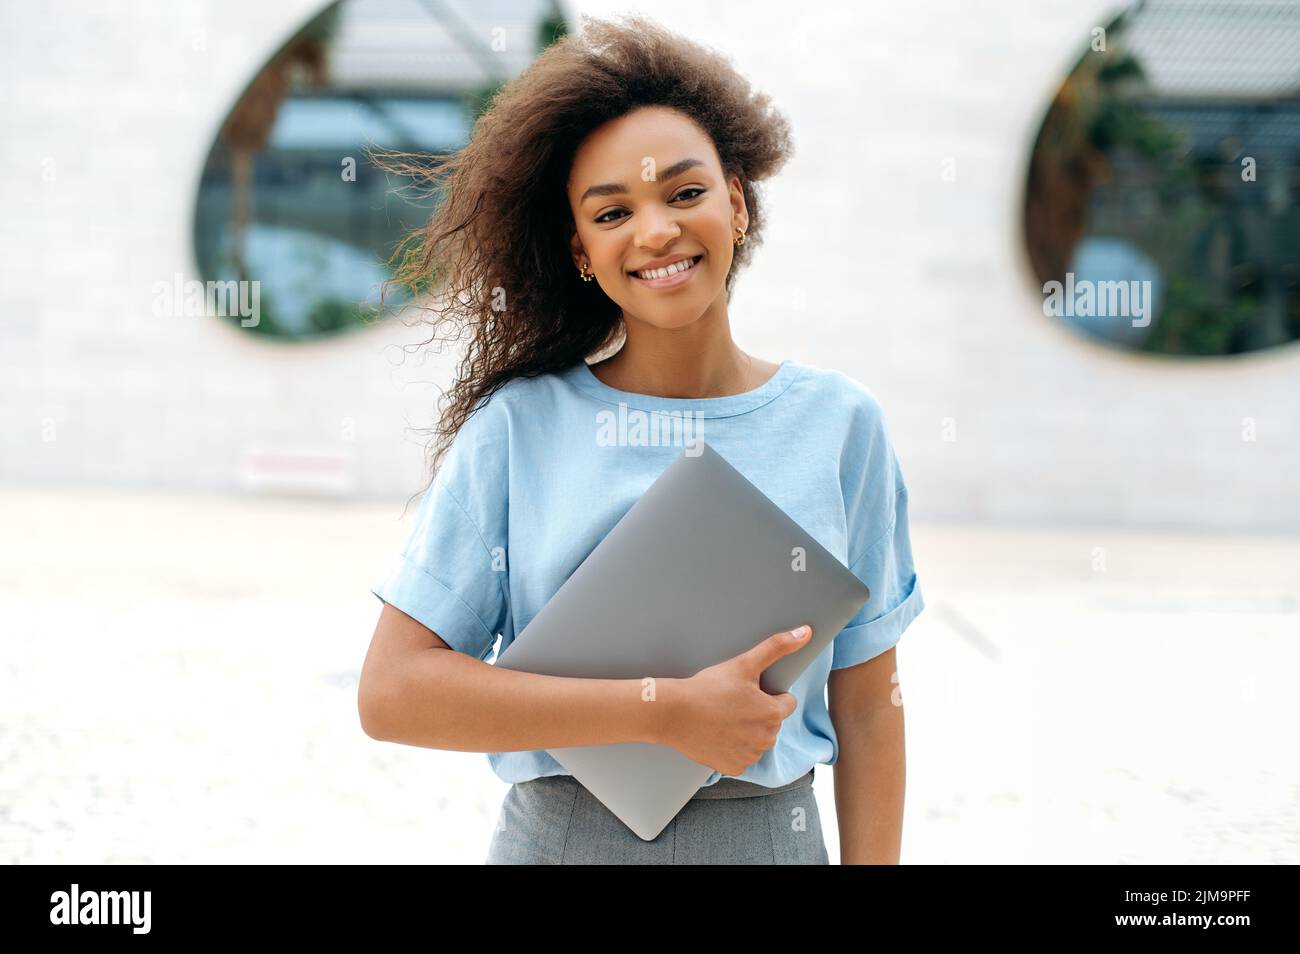 Elegante afroamerikanische junge Frau mit lockigen Haaren, freiberuflich tätige weibliche Mixed-Race-Mitarbeiterin, Studentin, mit Brille, in einem blauen Hemd, Laptop haltend, im Freien stehend, Kamera anblickend, glücklich lächelnd Stockfoto